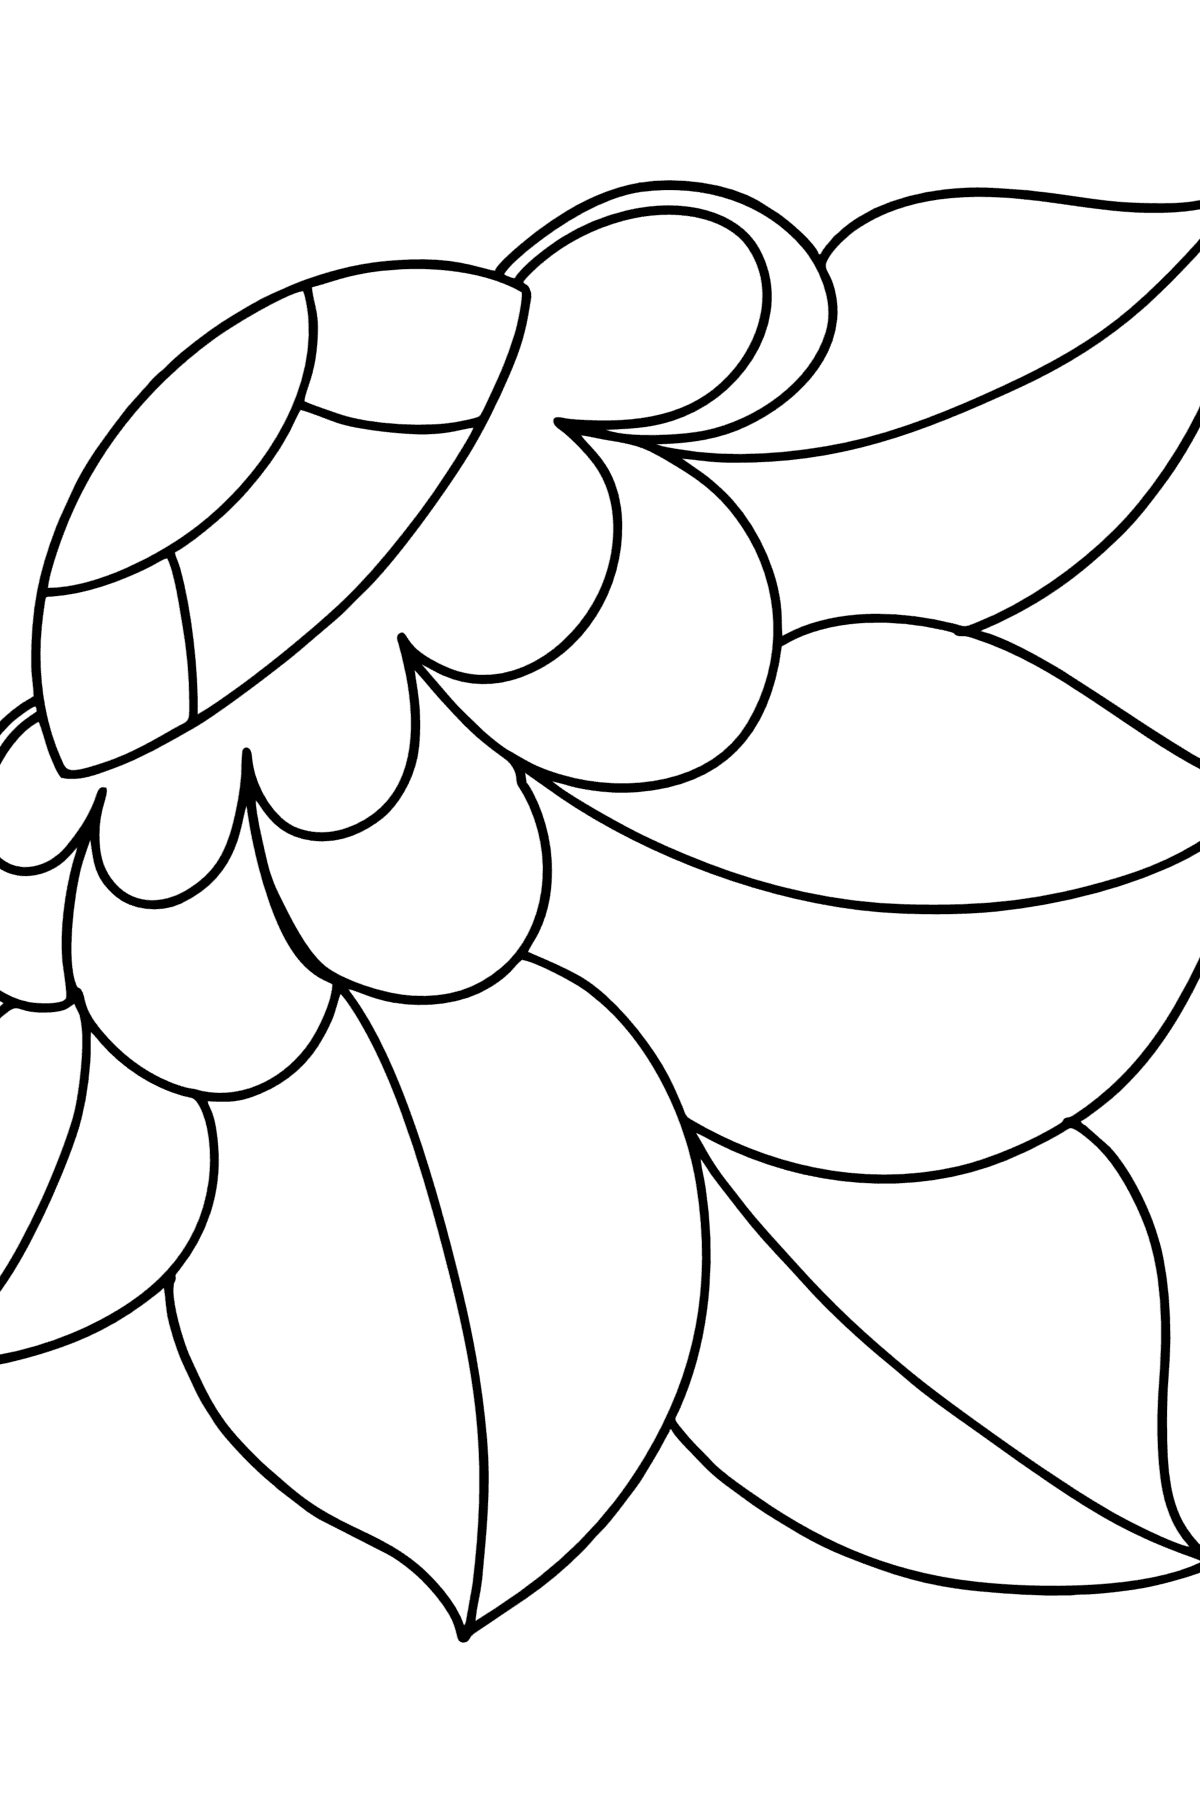 Ausmalbild Zentangle Blumenmuster - Malvorlagen für Kinder